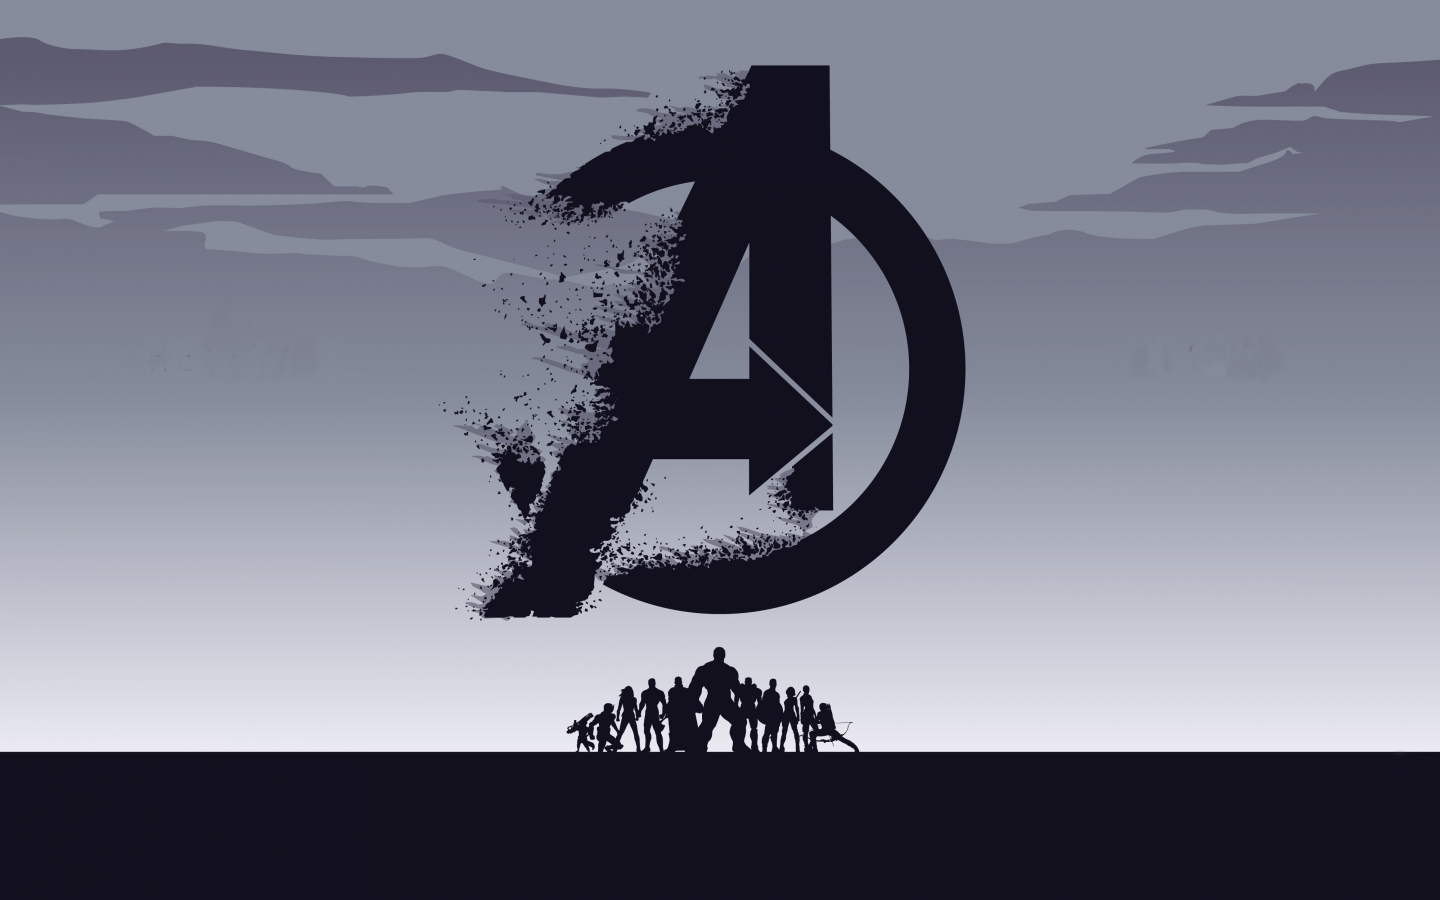 2019 movie, Avengers: Endgame, minimal, silhouette, art, 1440x900 wallpaper